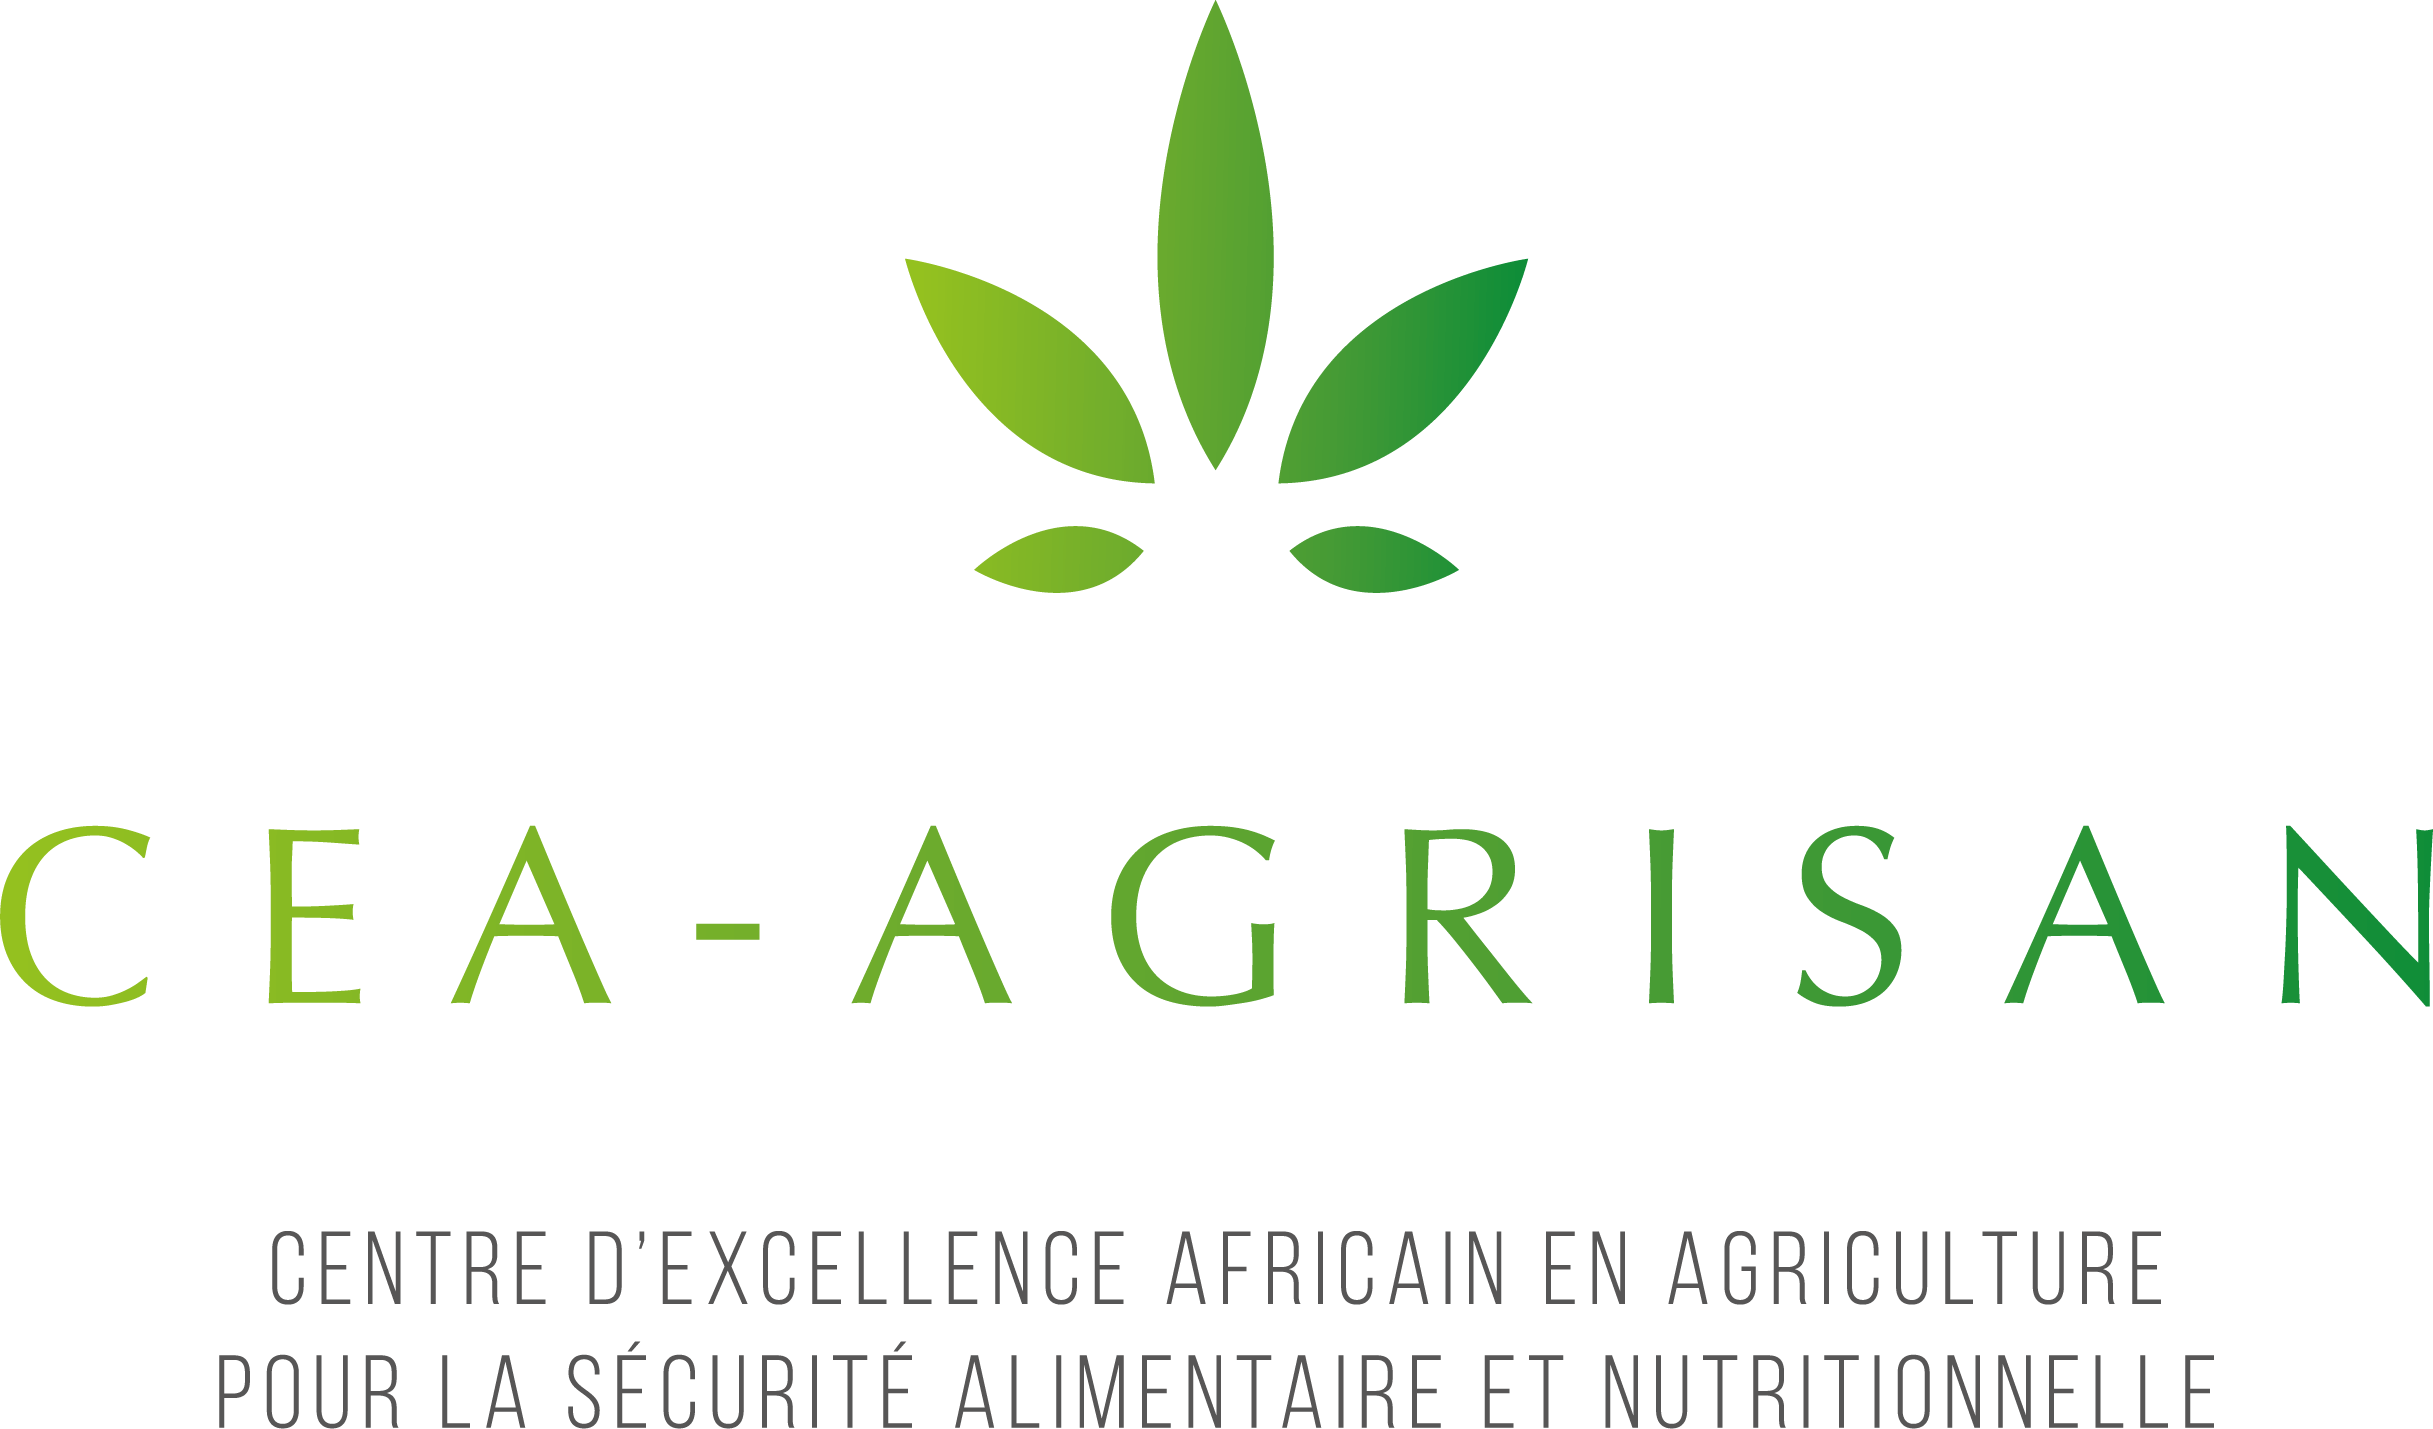 CEA AGRISAN - Un centre d'excellence pour l'agriculture et la nutrition